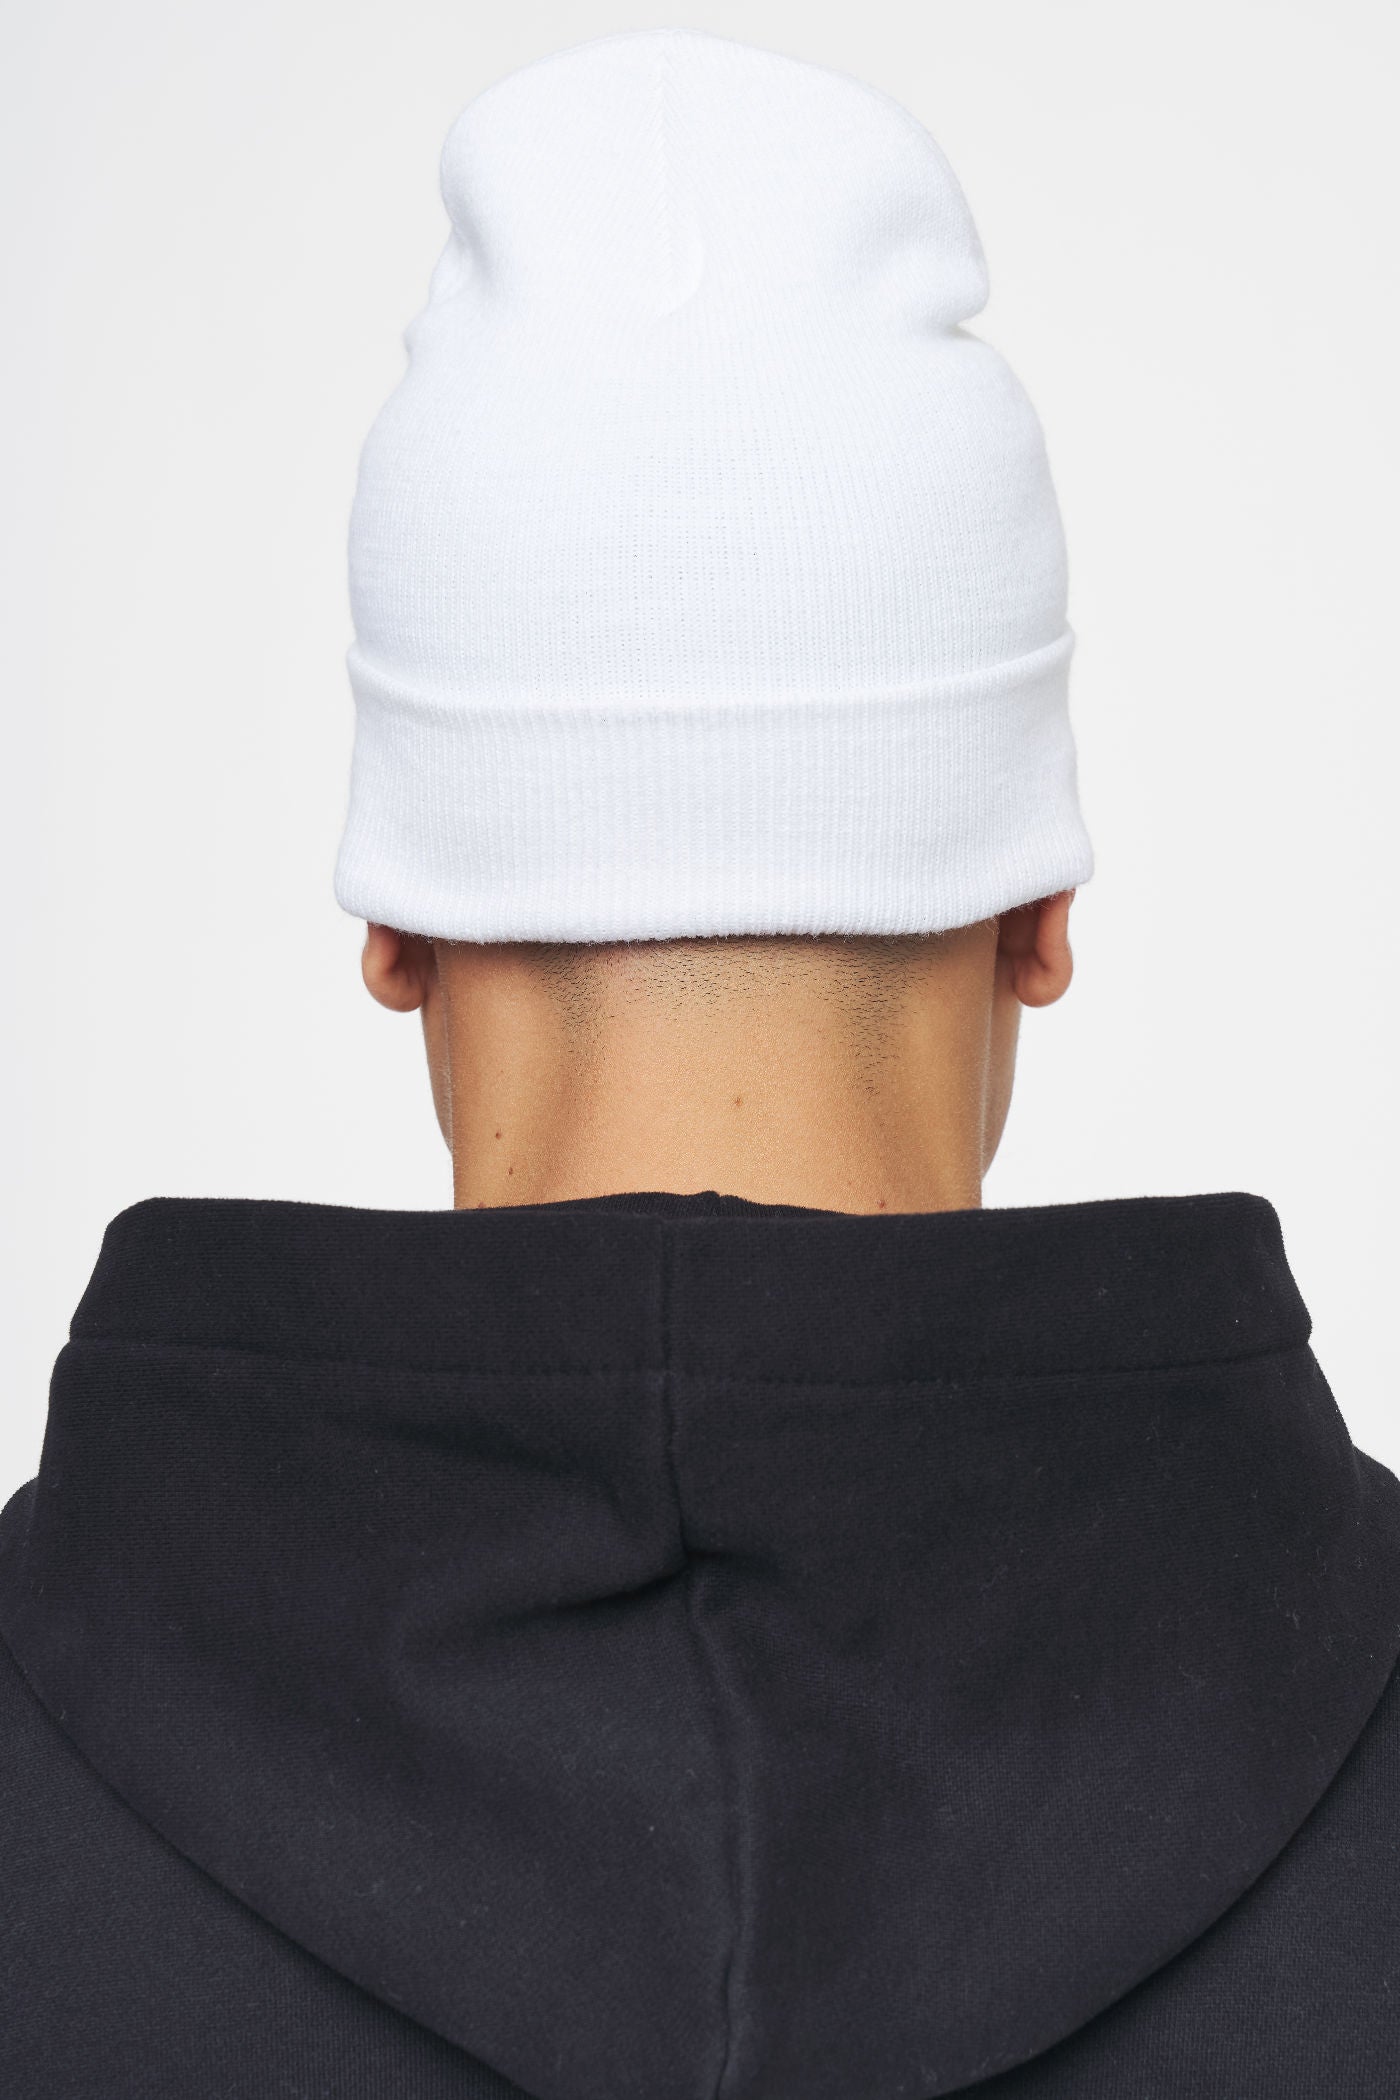 Logo Beanie White Black Headwear Ahead of Time Male 